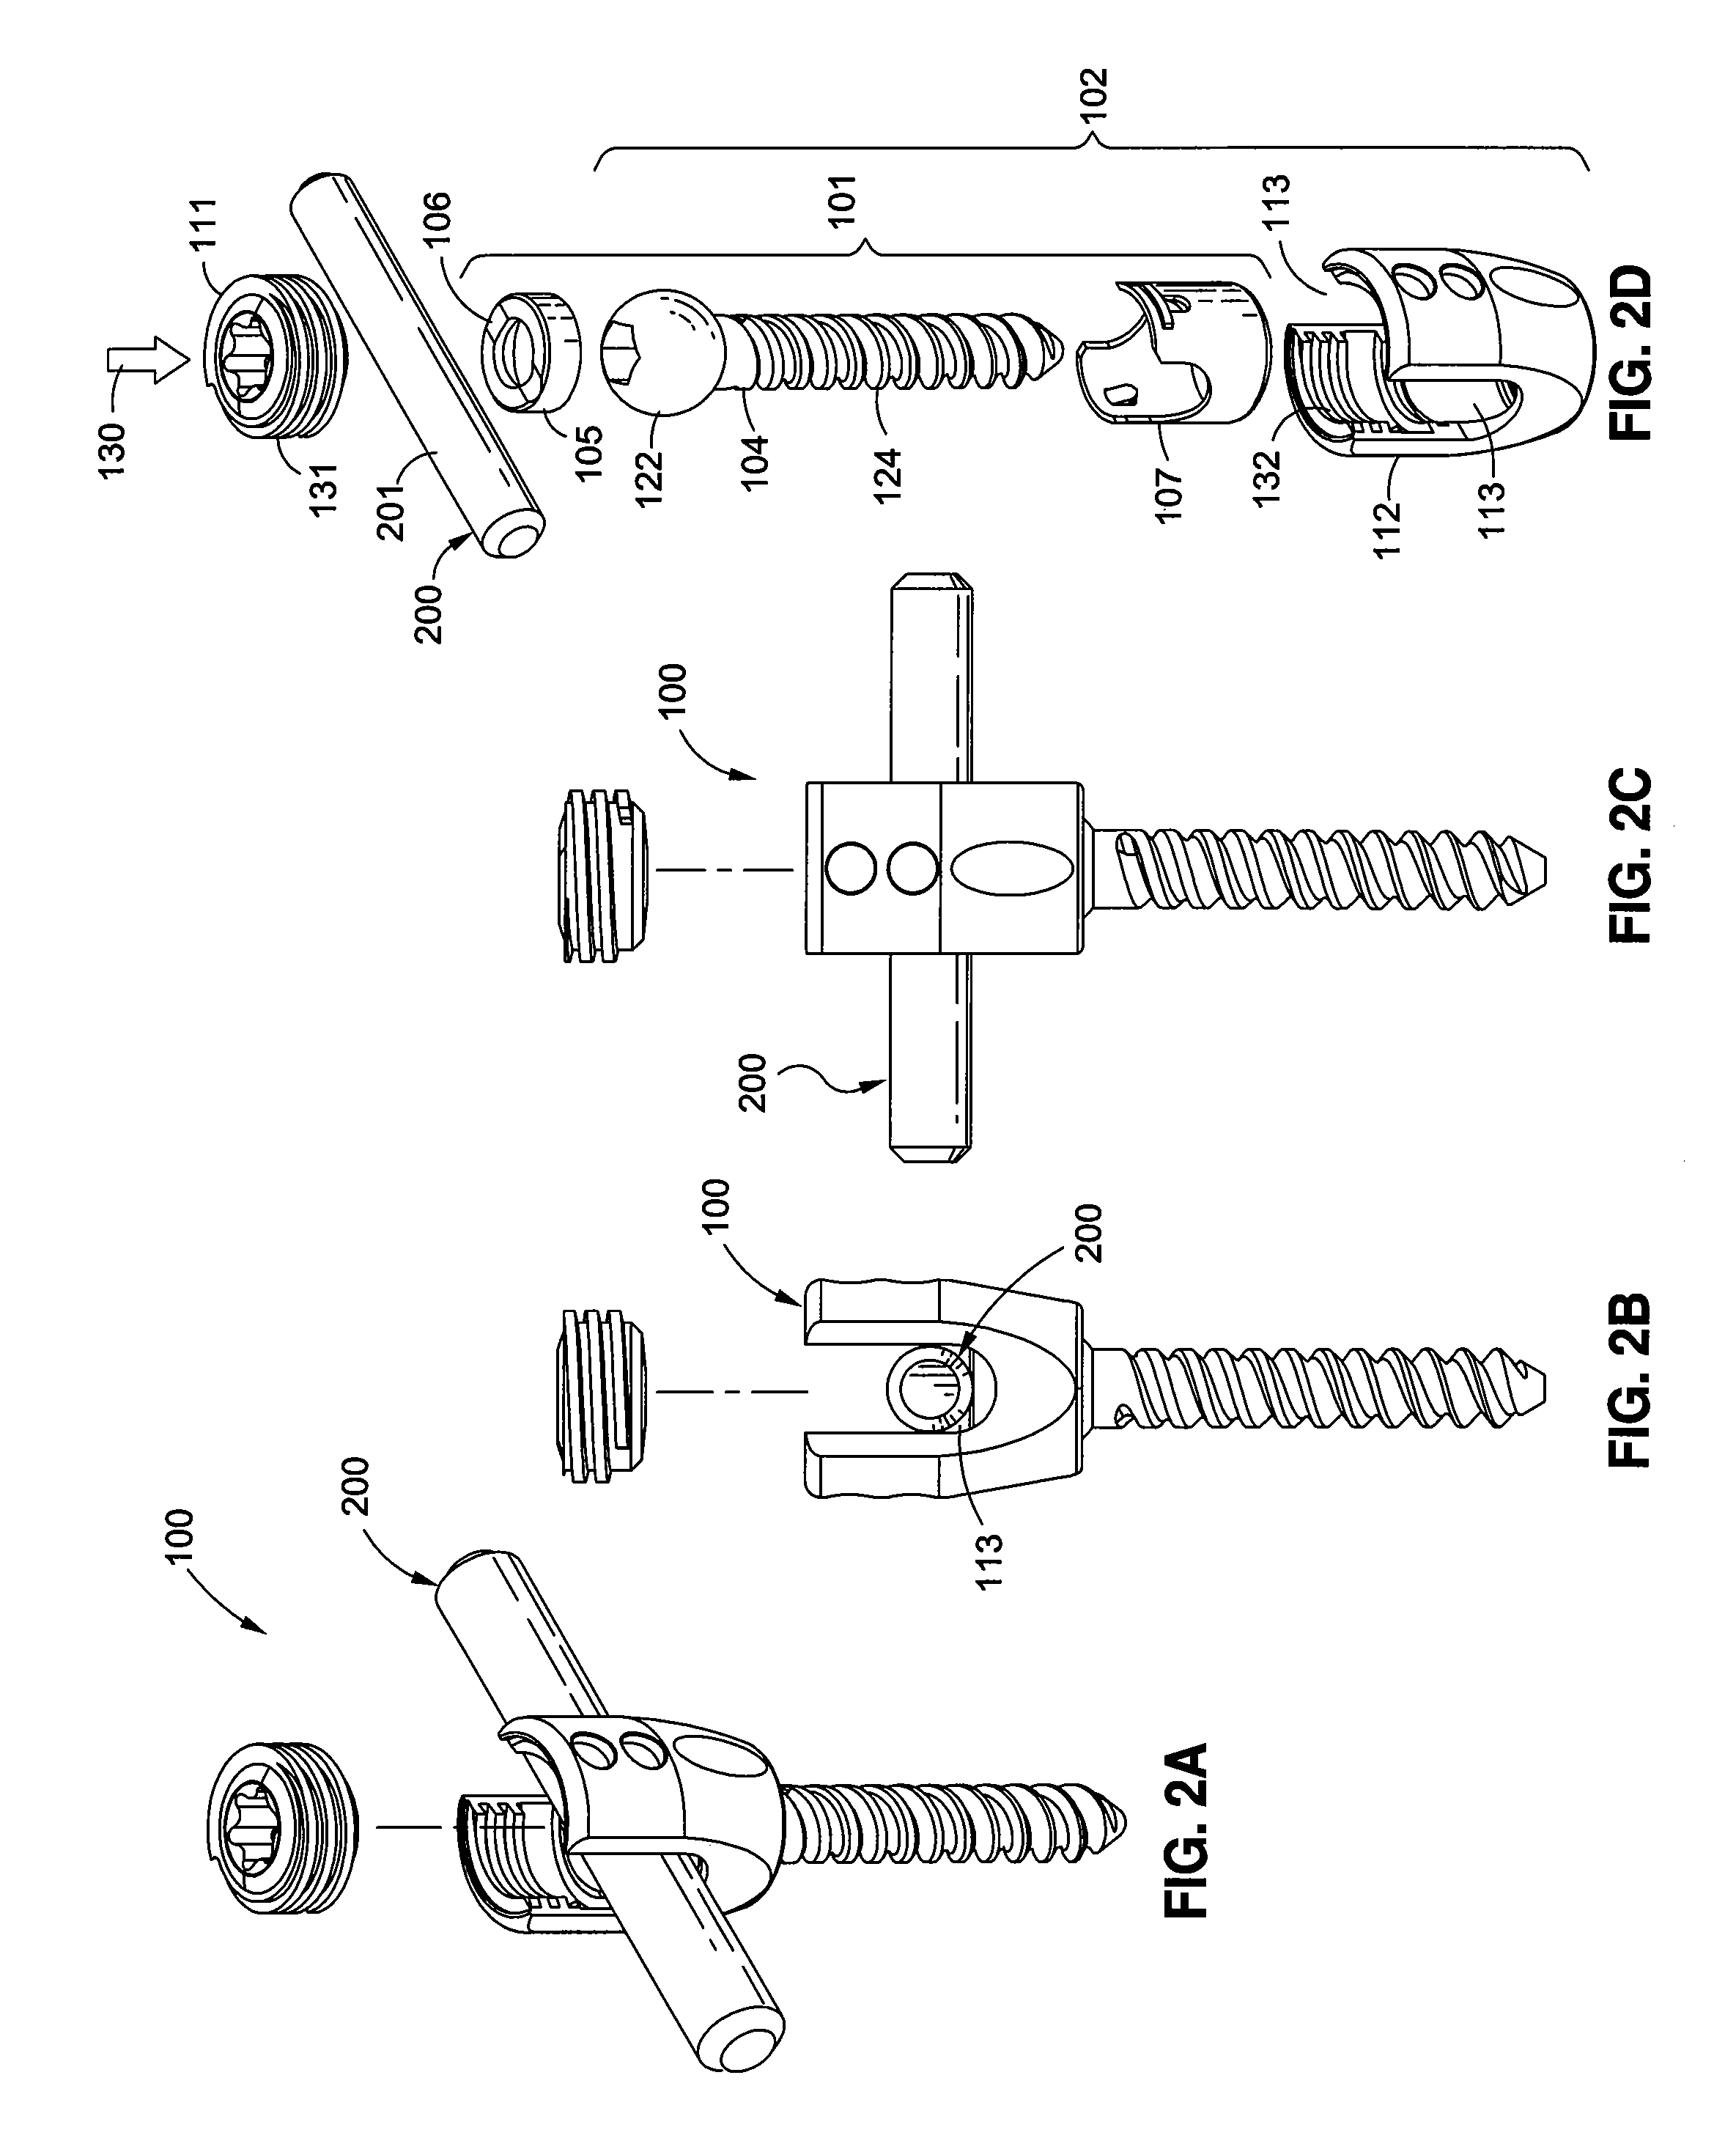 Pedicle screws and dynamic adaptors